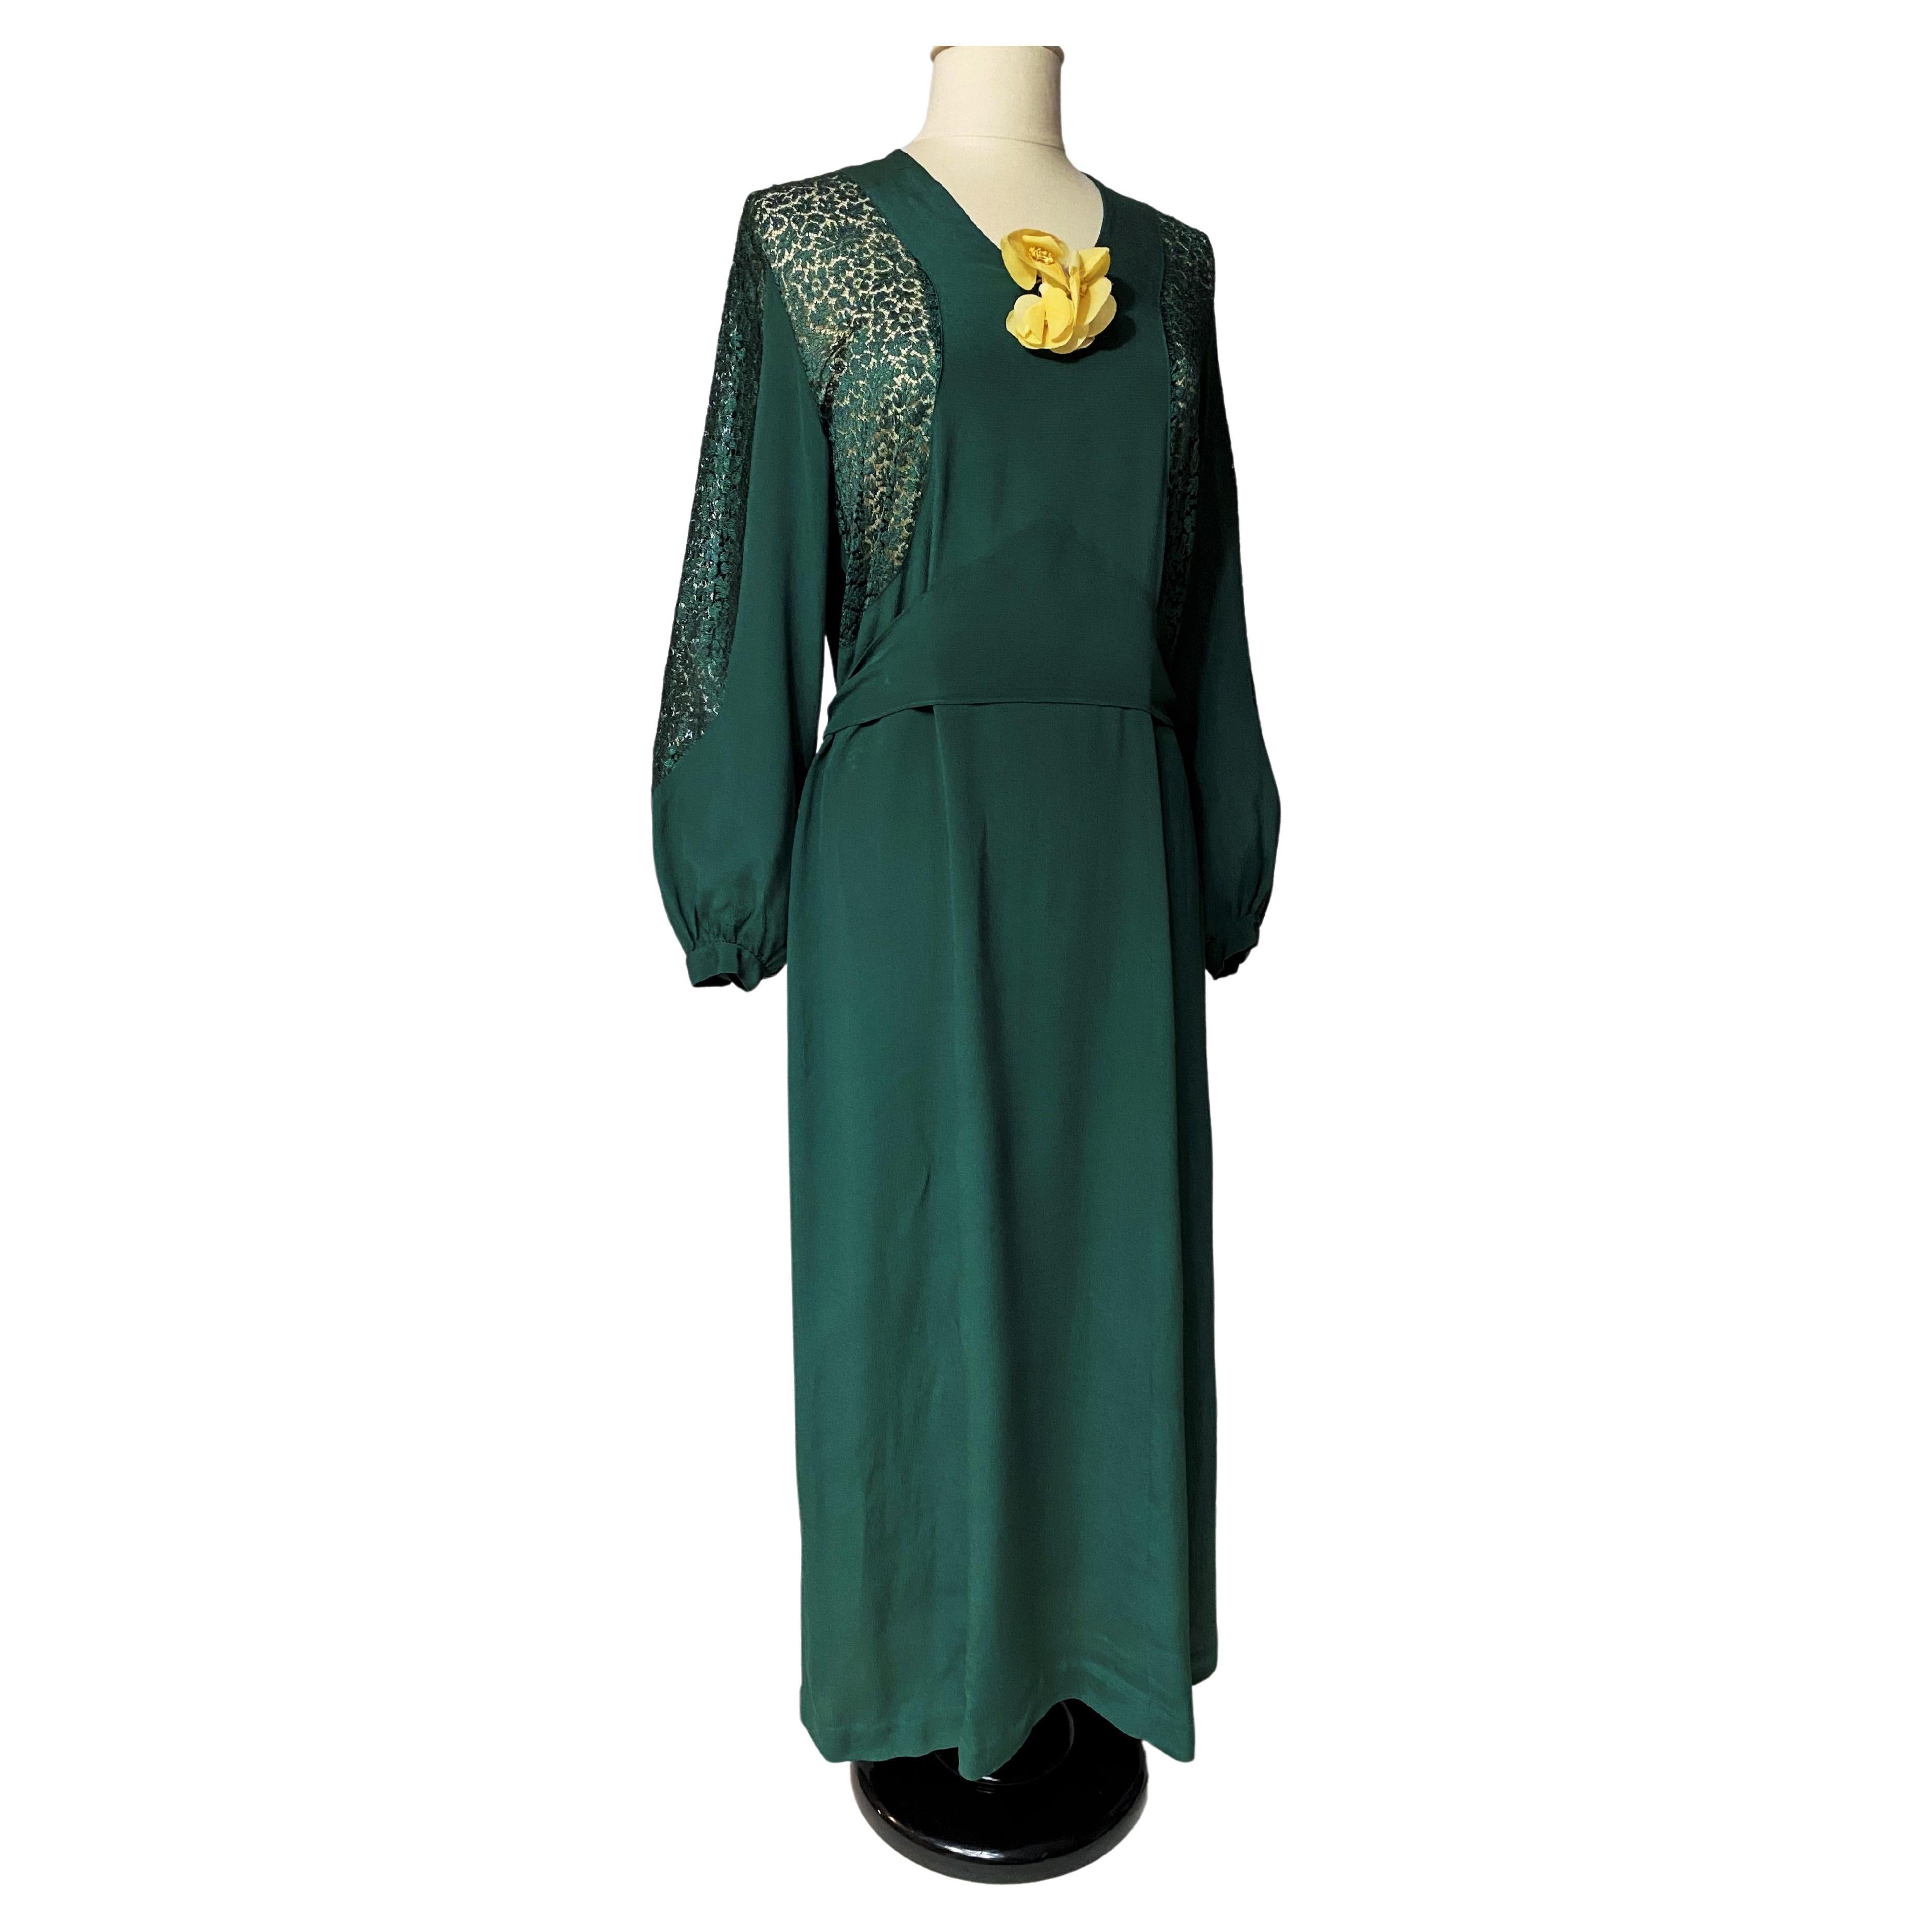 Smaragdgrünes Abendkleid aus Crêpe und Spitze - Frankreich um 1940